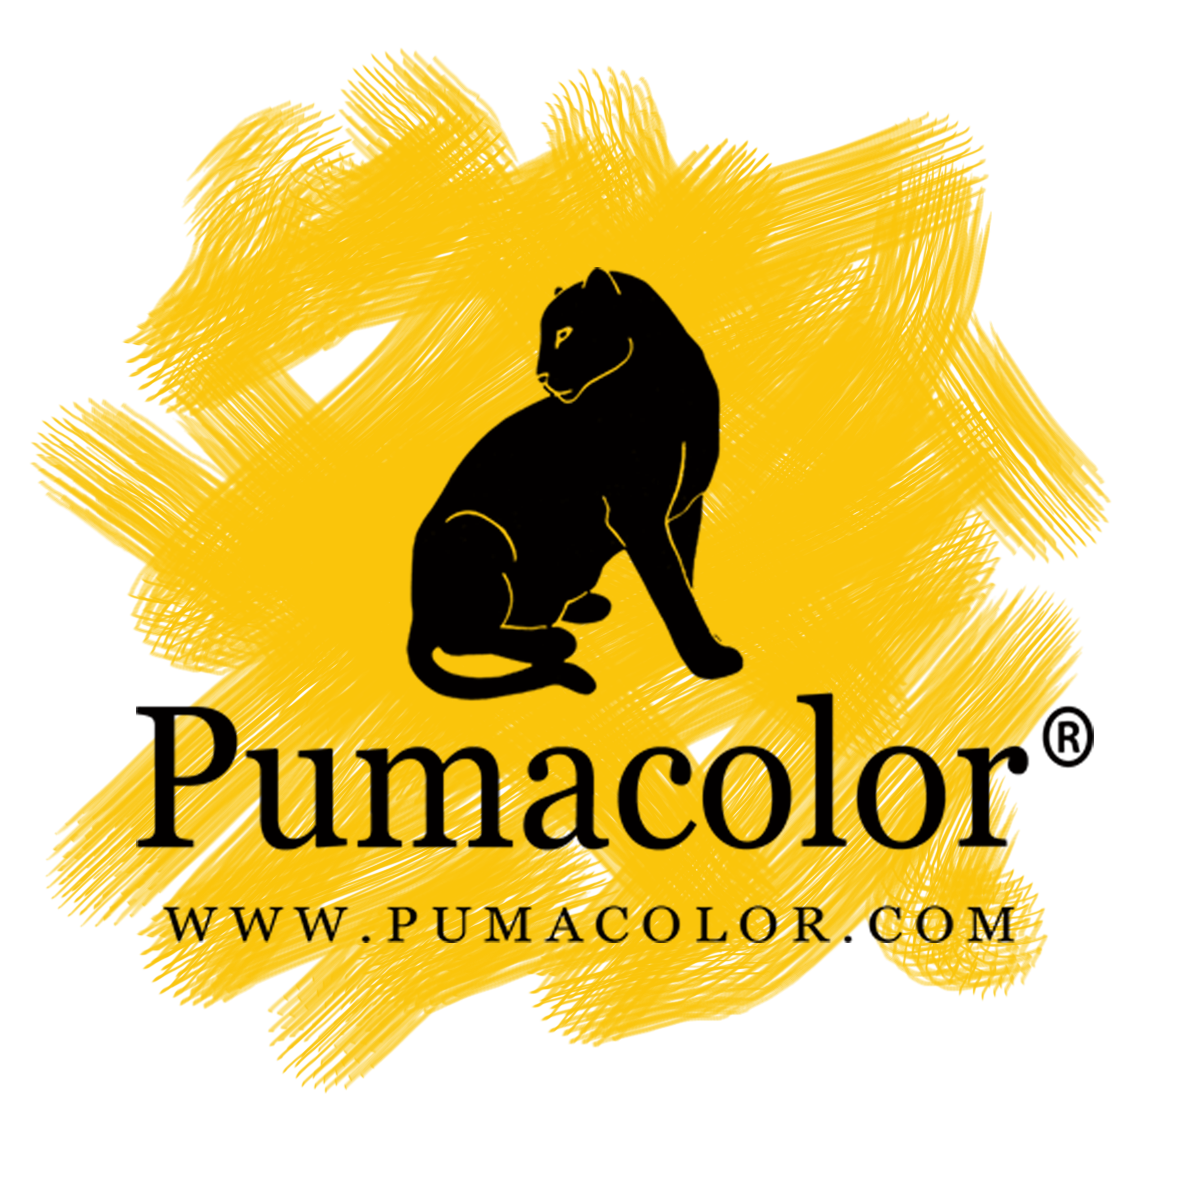 Pumacolor